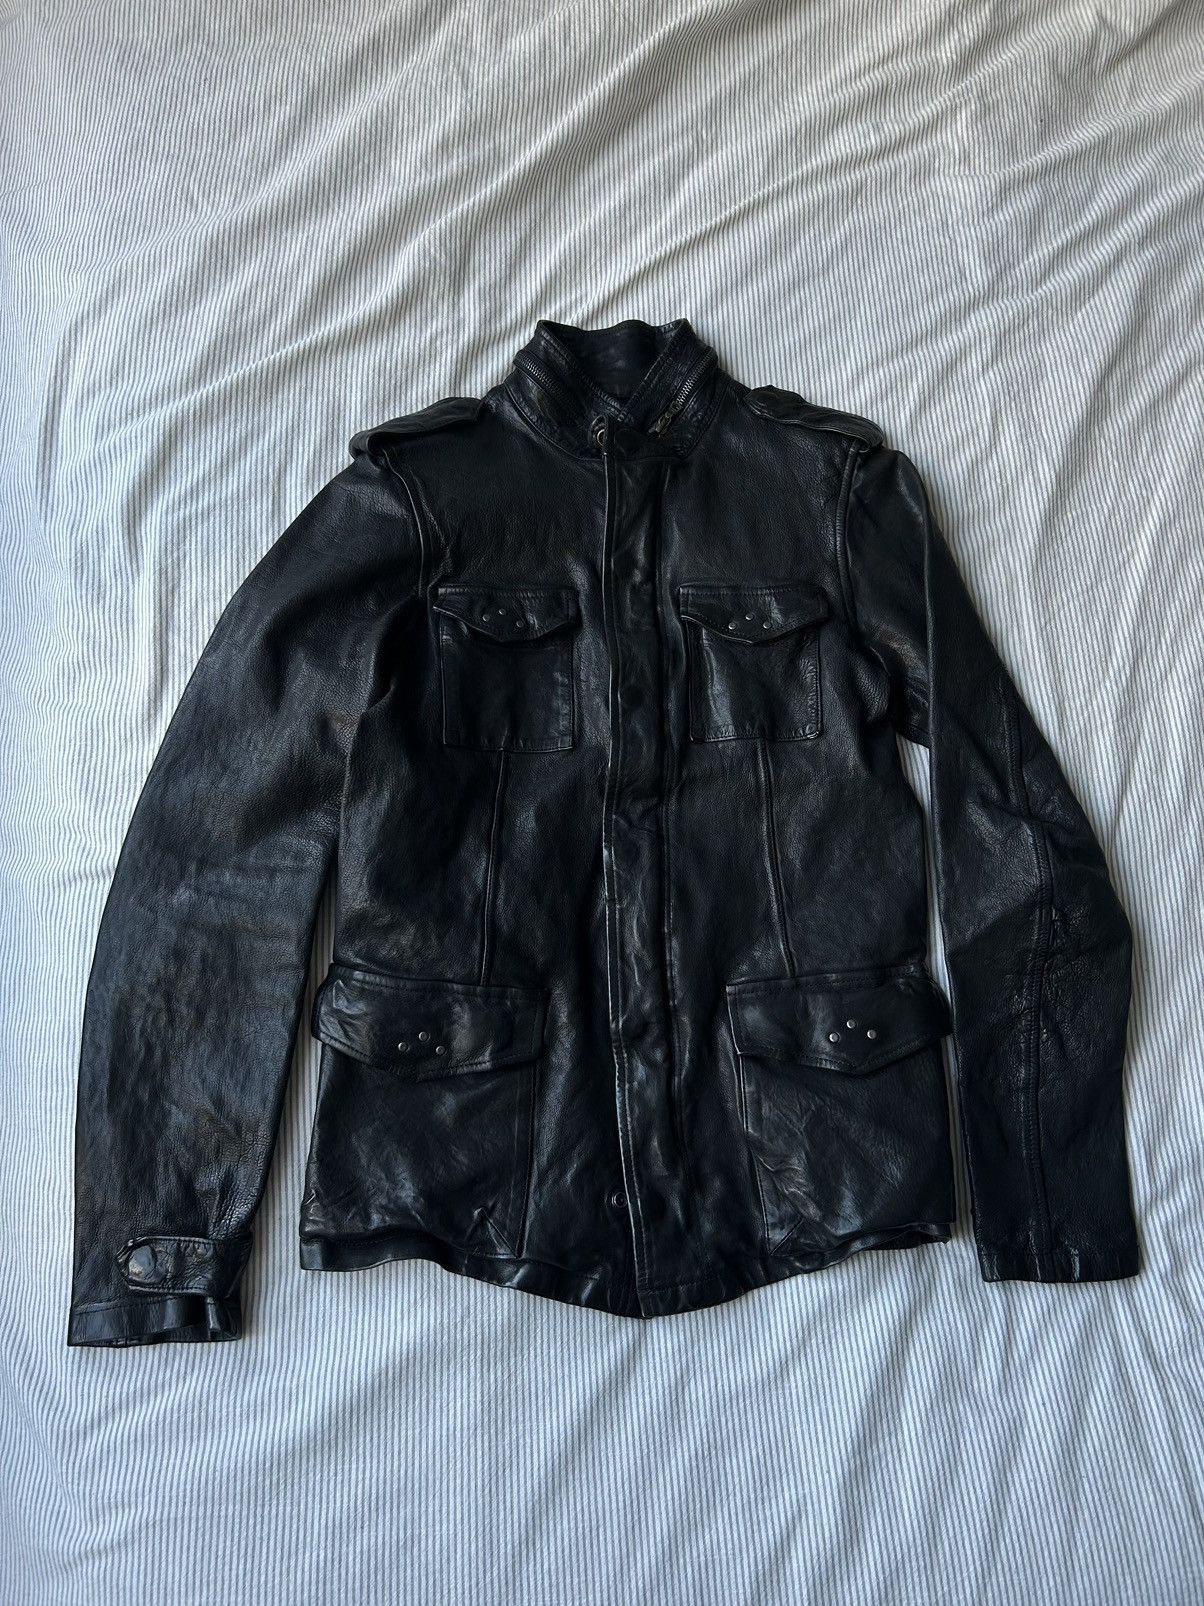 Isamu Katayama Backlash (1) Backlash Black M65 Leather Jacket 